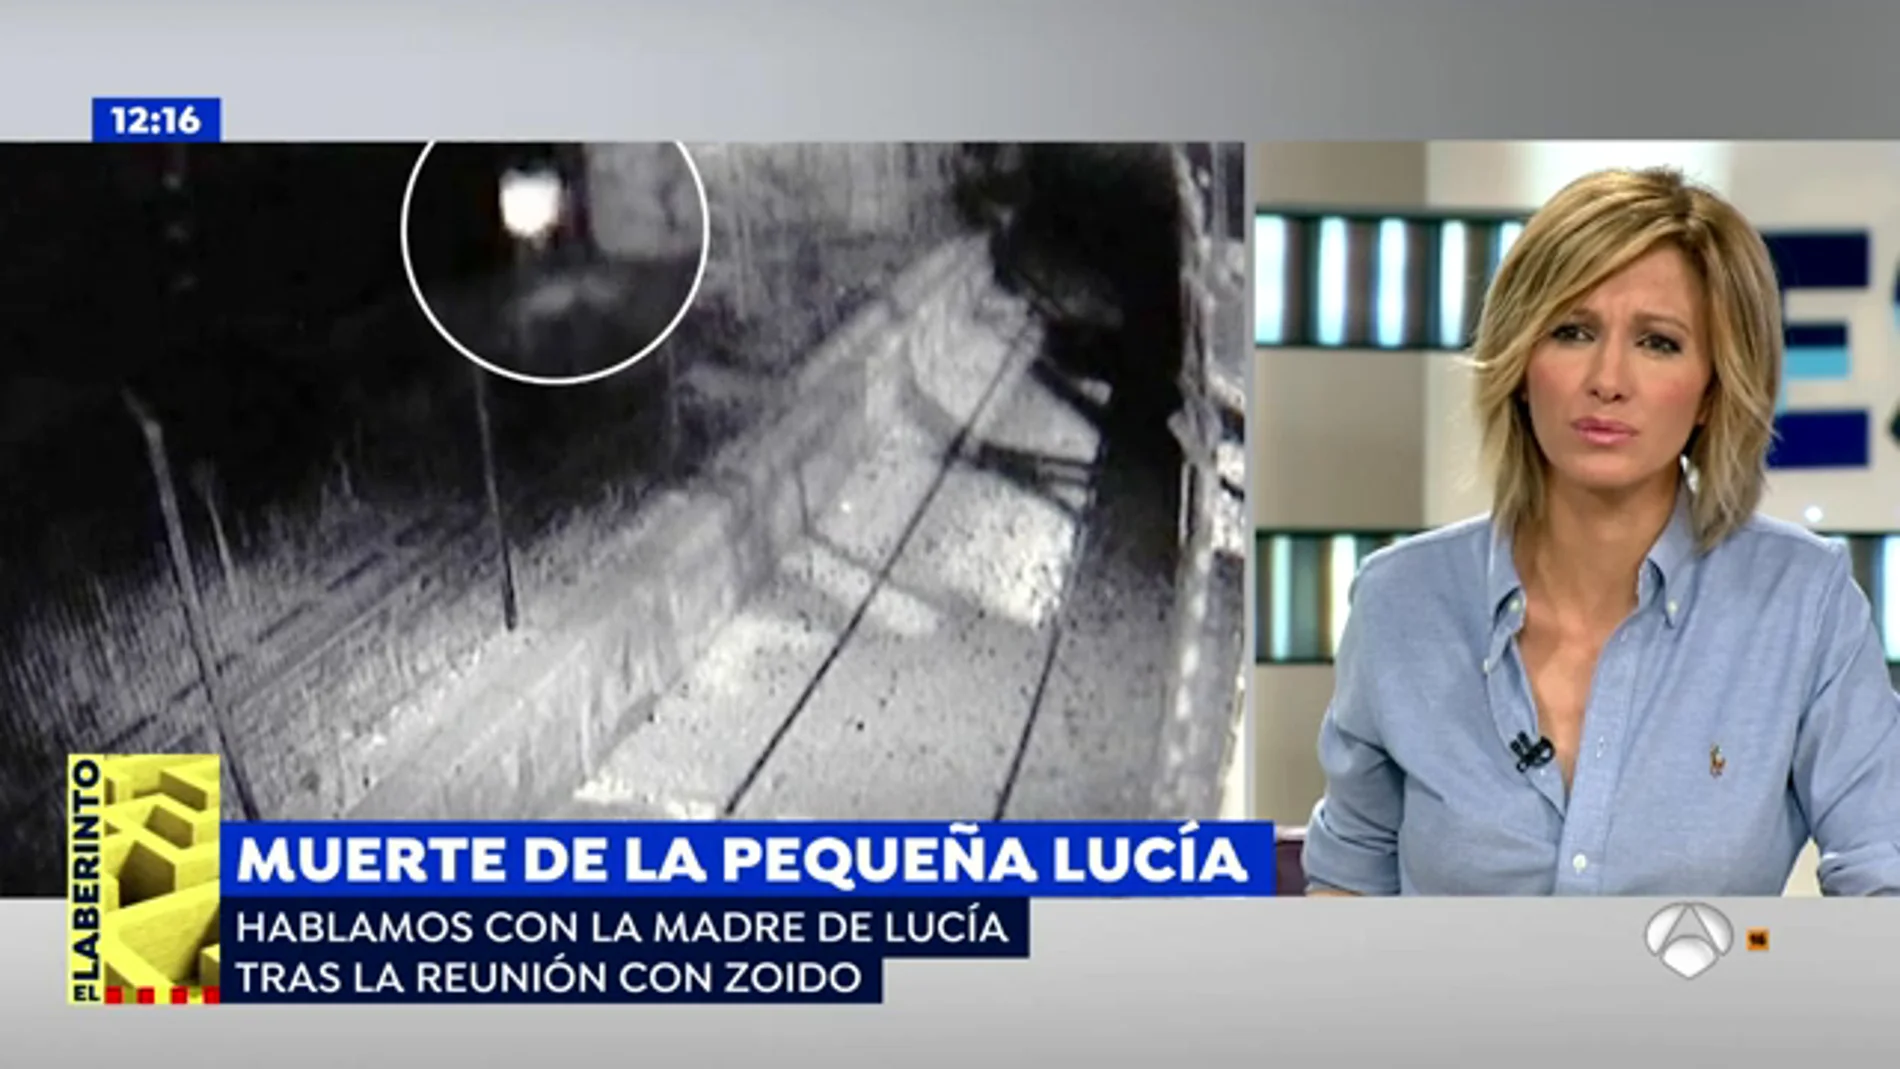 La madre de Lucía Vivar, la pequeña que murió en las vías del tren, tras su reunión con Zoido: "Se ha comprometido a poner un especialista para aclarar nuestras dudas"